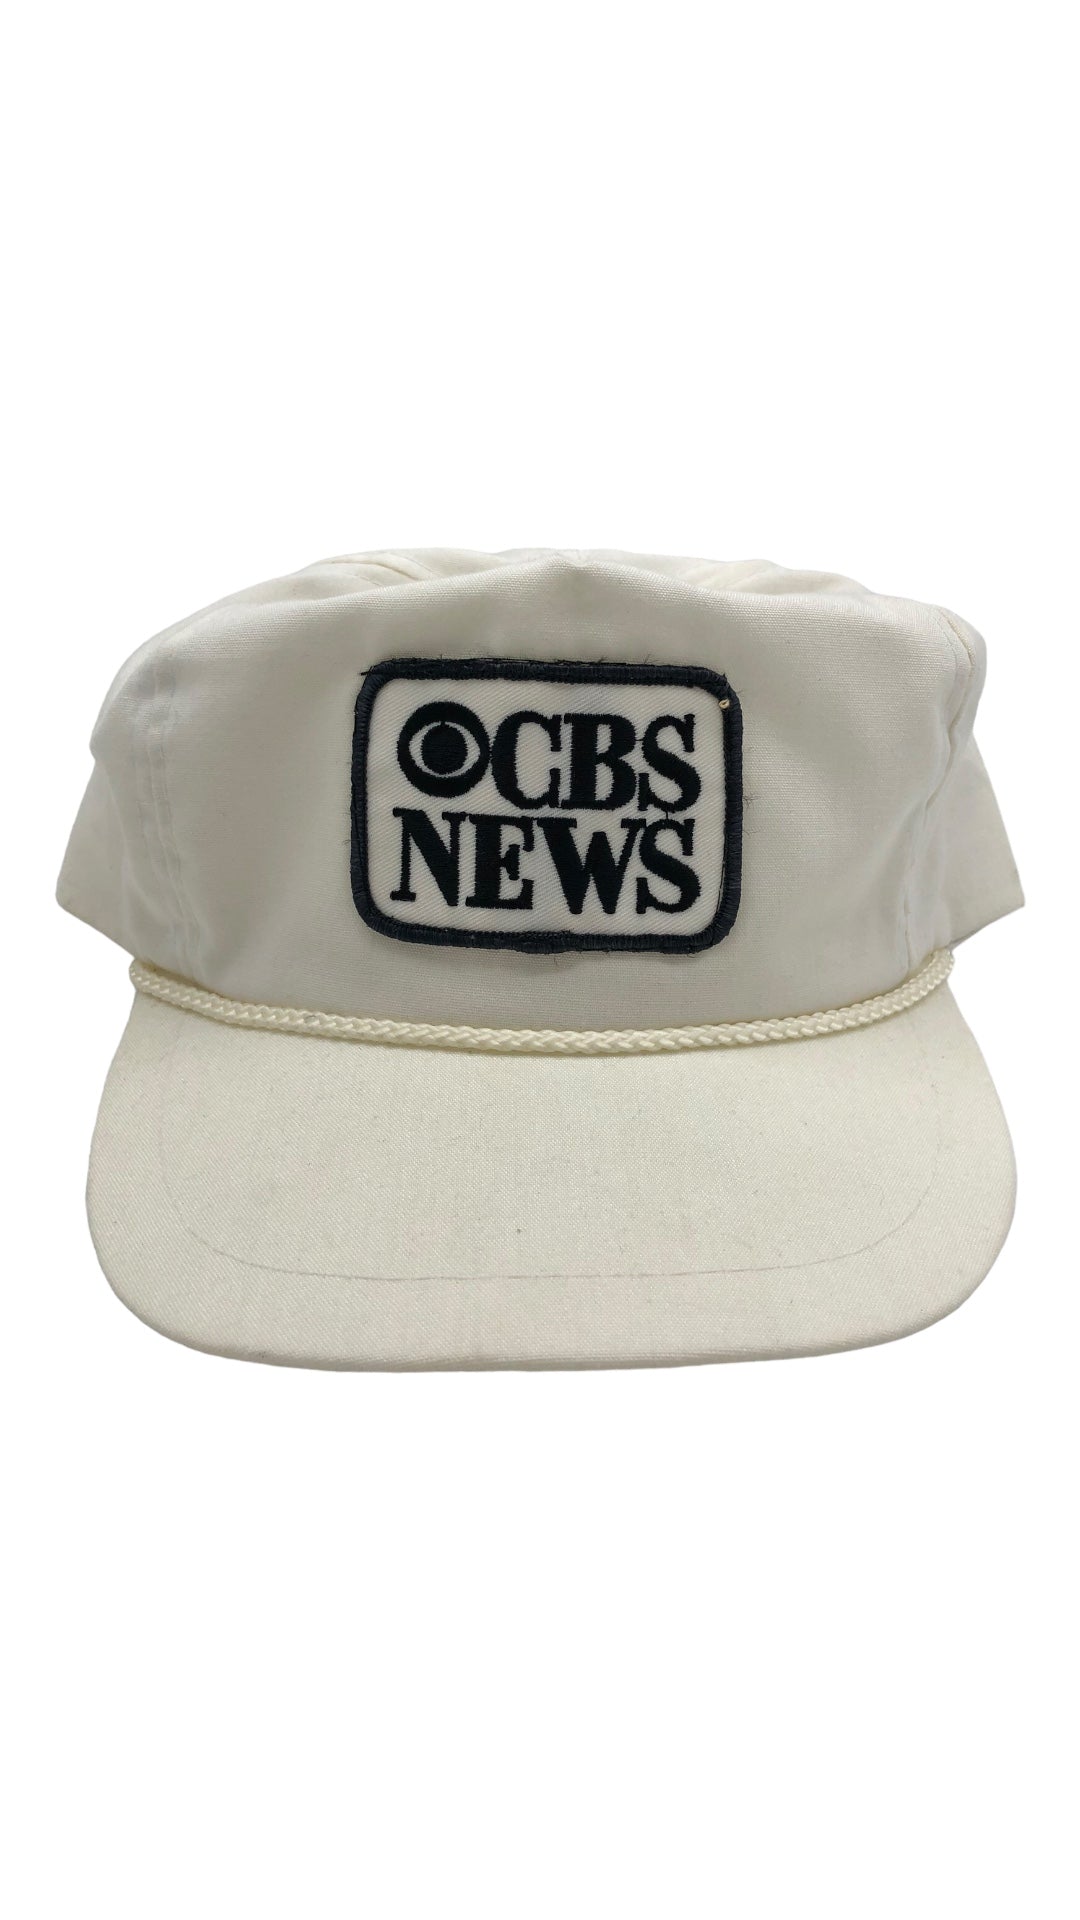 VTG CBS News White Rope Hat